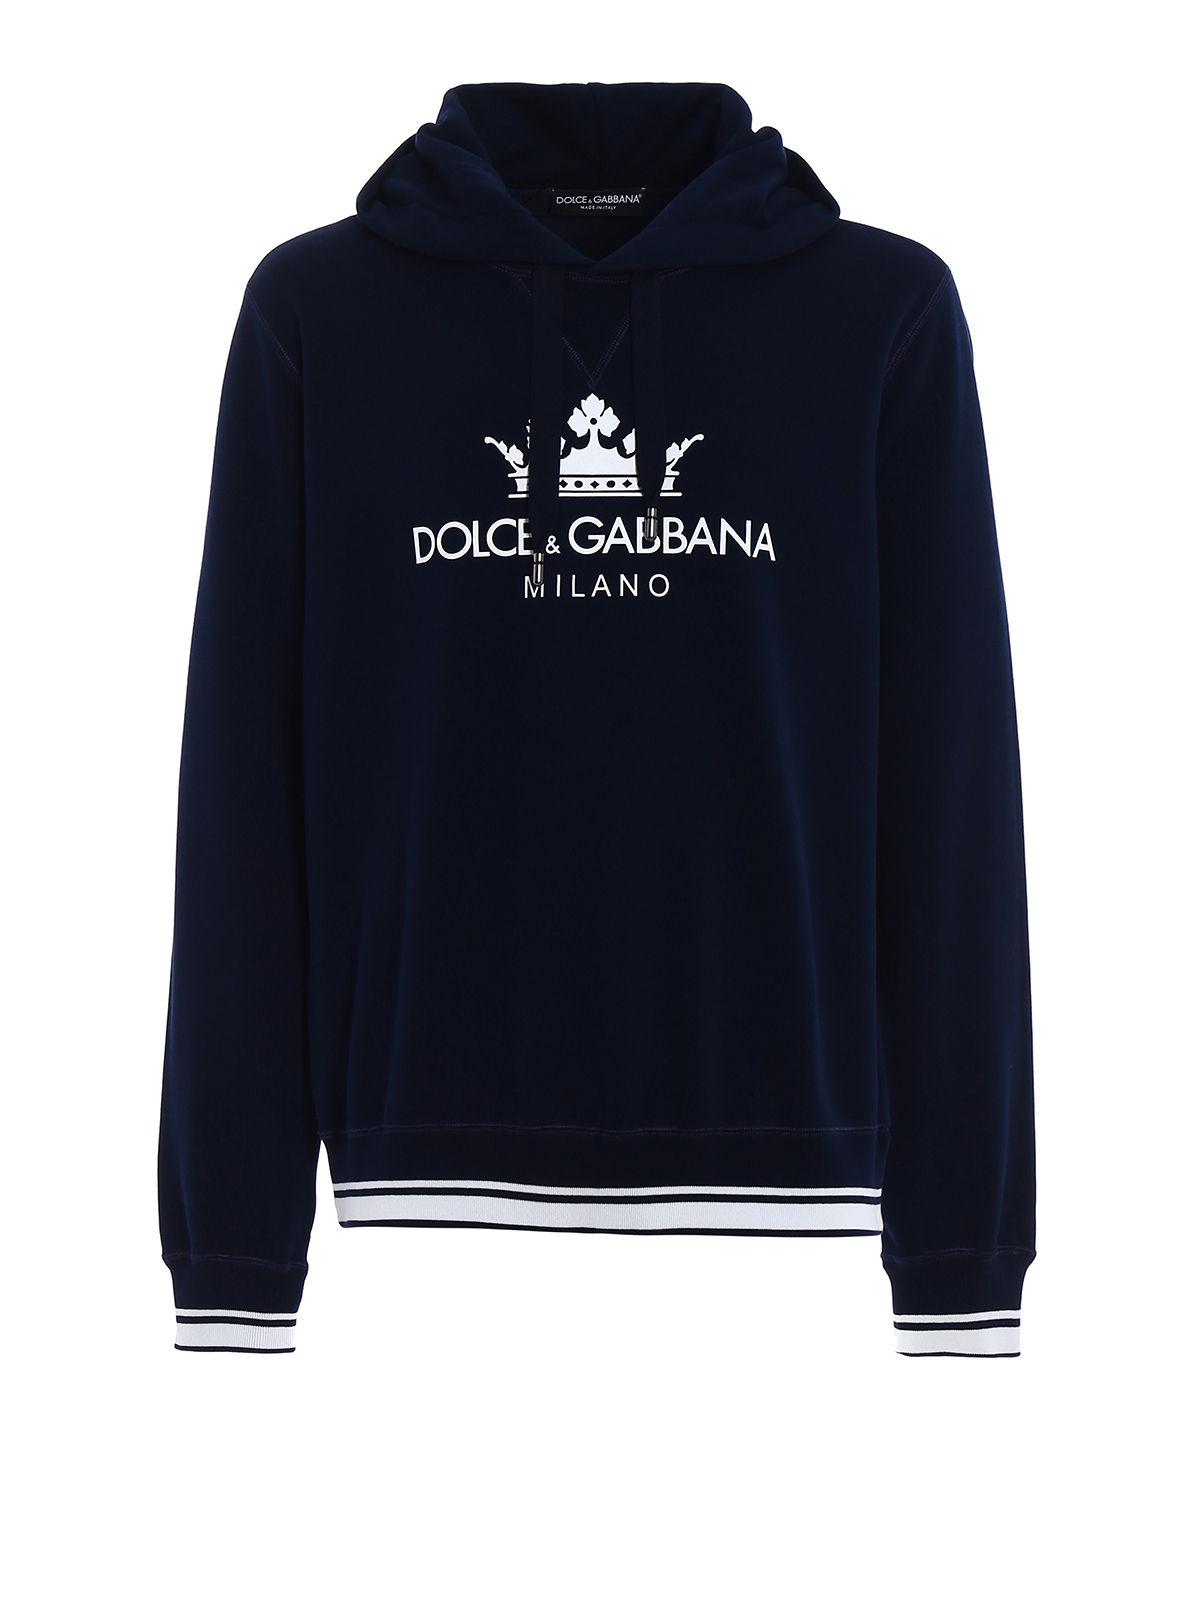 Dolce & Gabbana Cotton Crown Dg Logo Hoodie in Blue for Men - Lyst